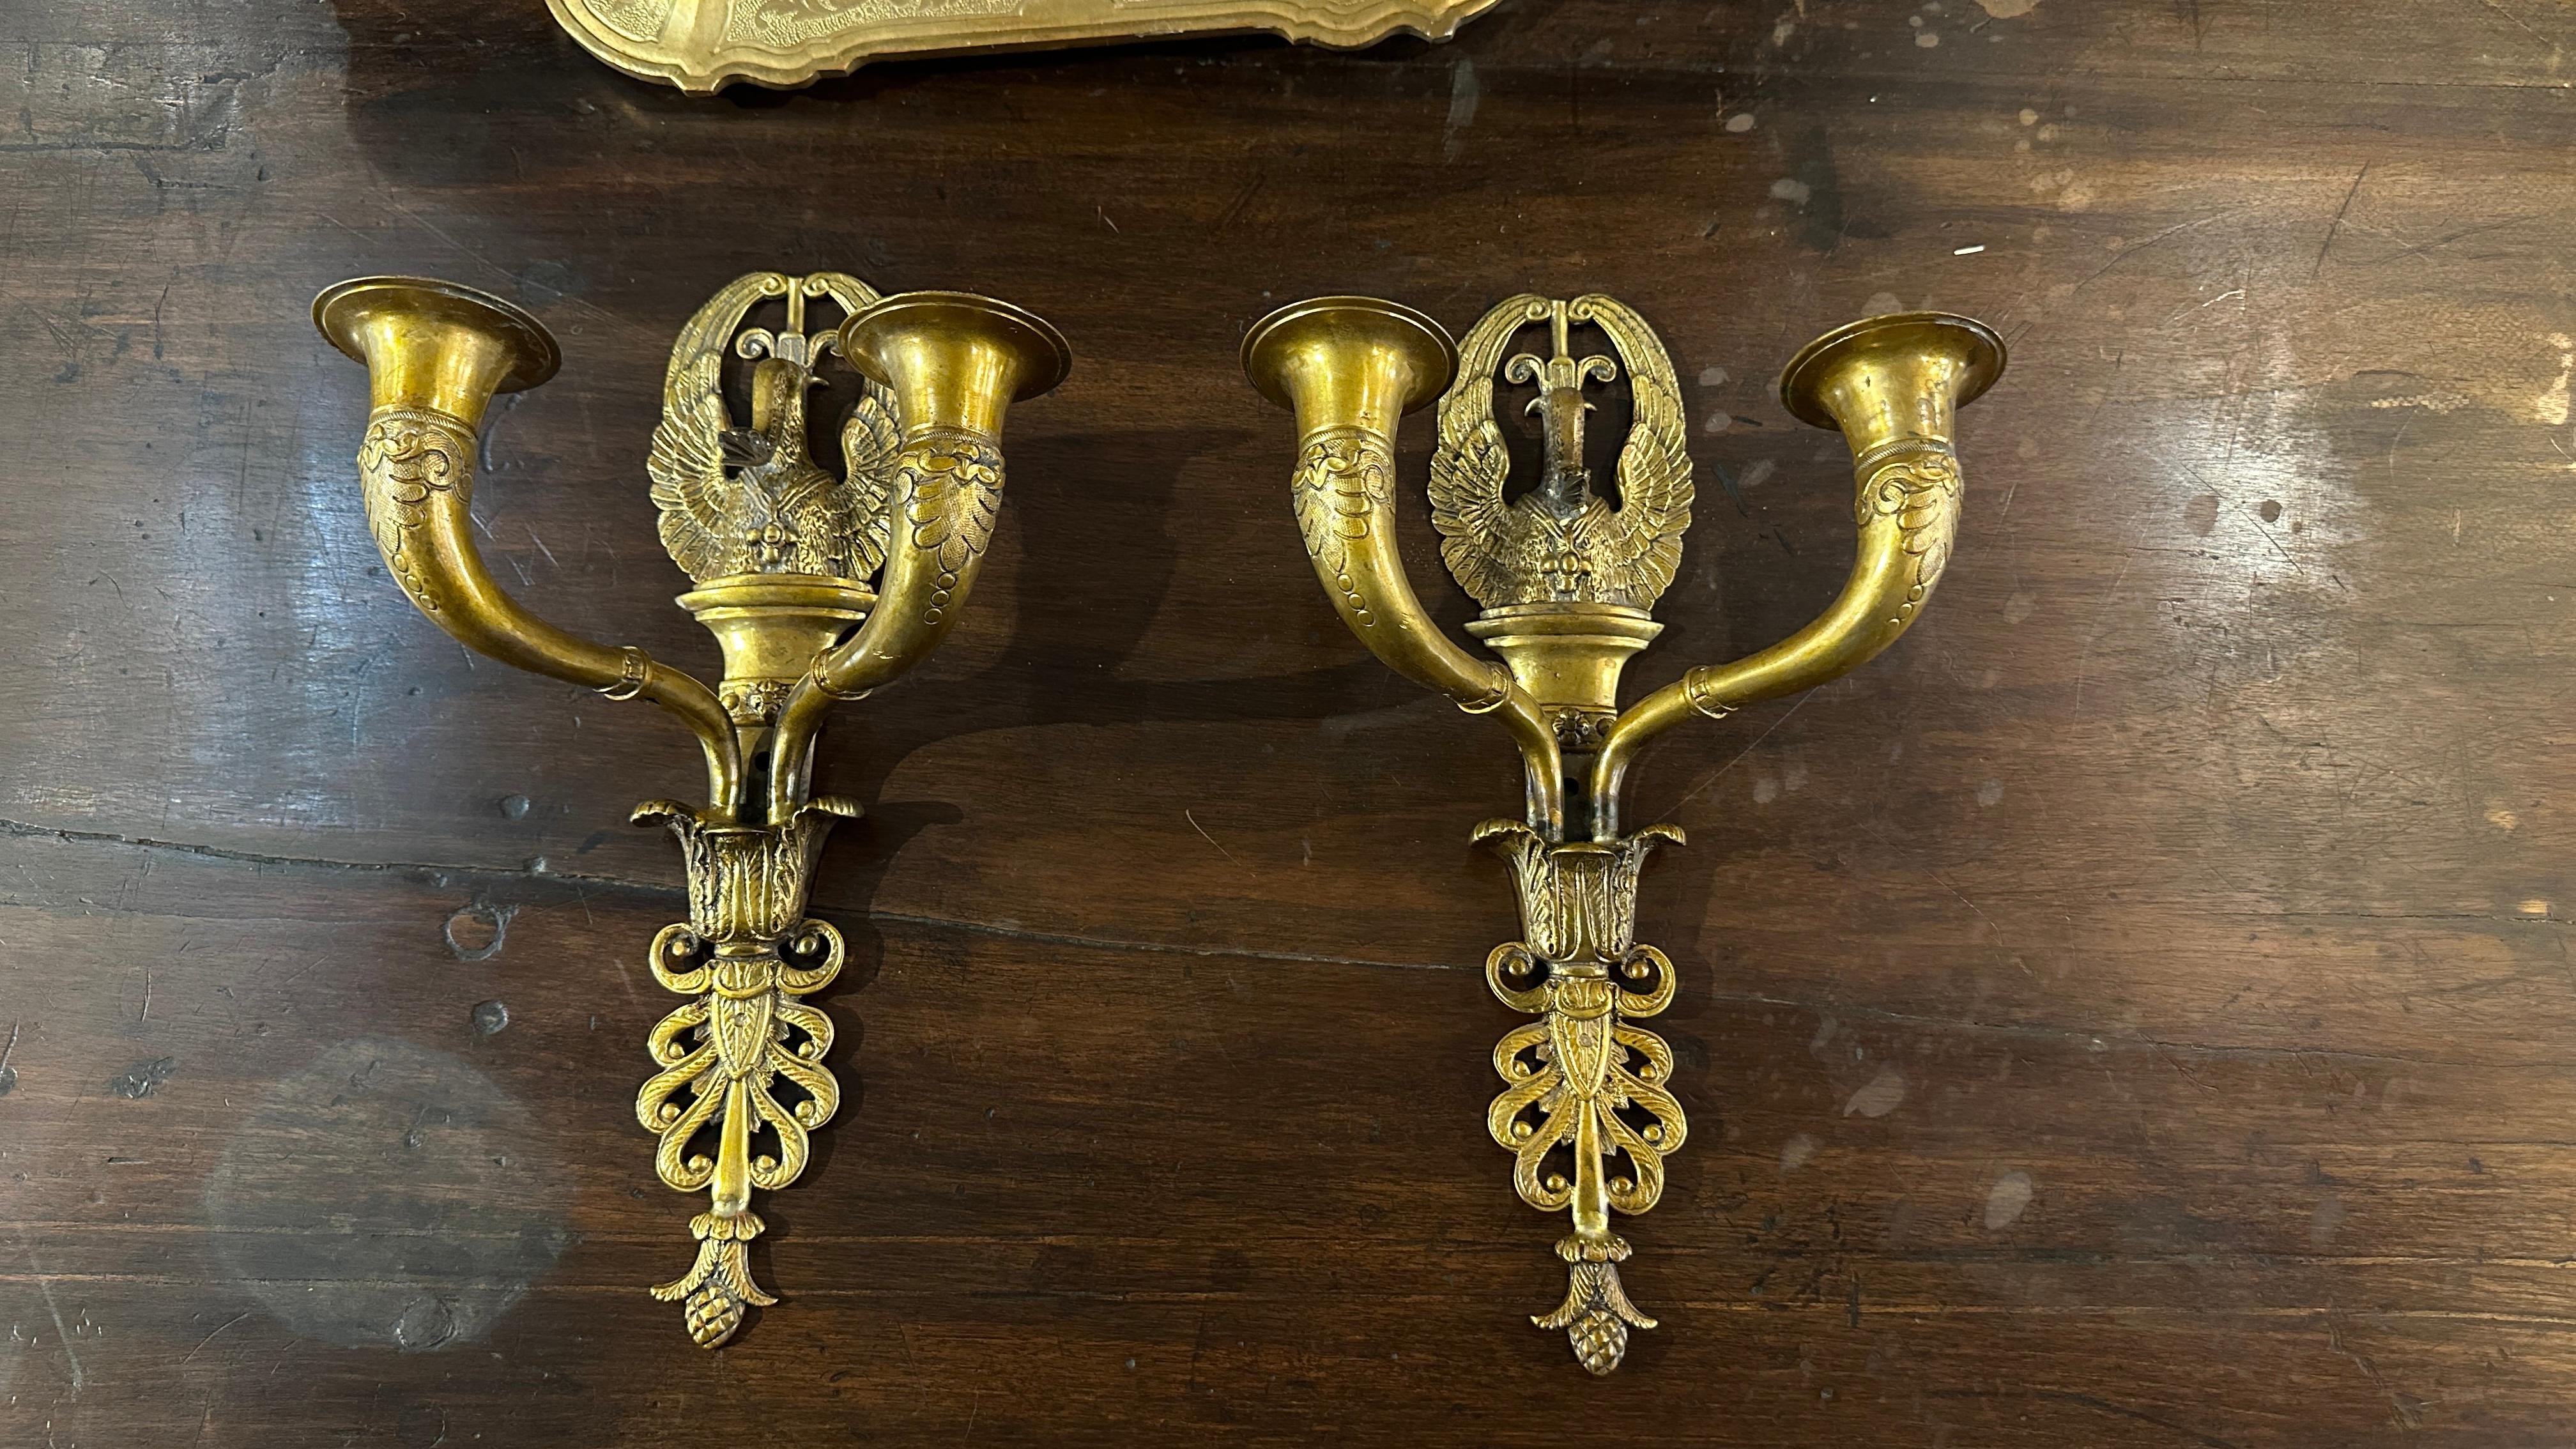 Diese beiden vergoldeten Bronzewandleuchter im Empire-Stil stammen aus der Zeit von Napoleon III., die dem Zweiten Französischen Kaiserreich zwischen 1852 und 1870 entspricht. Dieser Stil ist von der Kunst des antiken Roms und der Epoche des